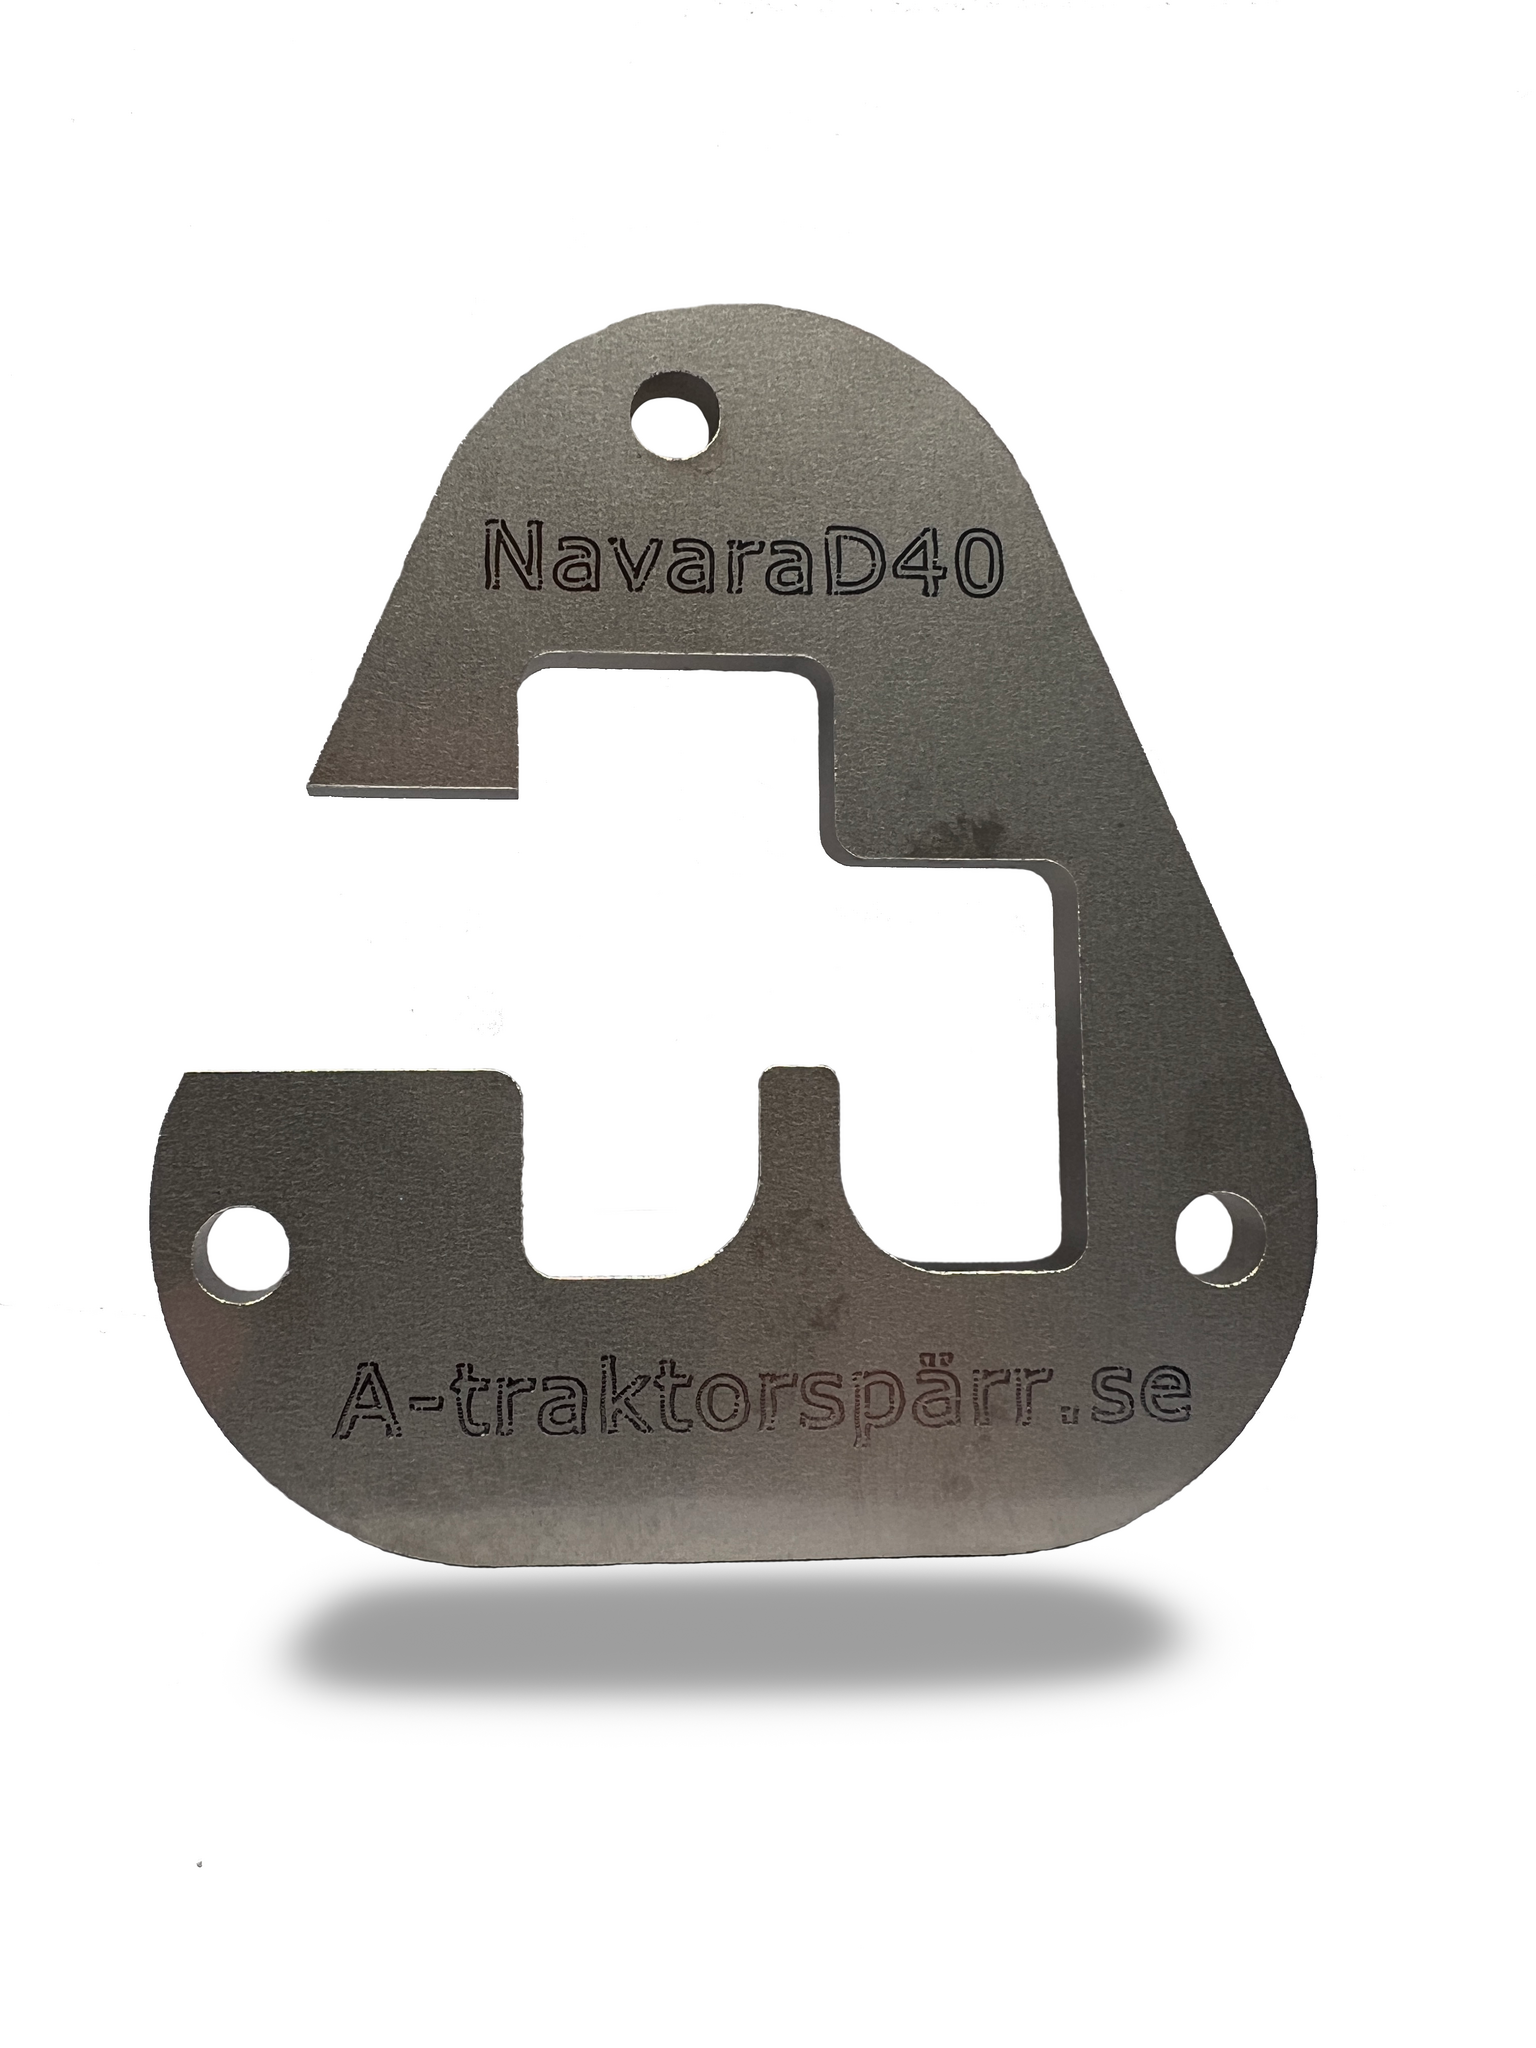 Växelspärr Navara D40 - 123R   - Atraktorspärr